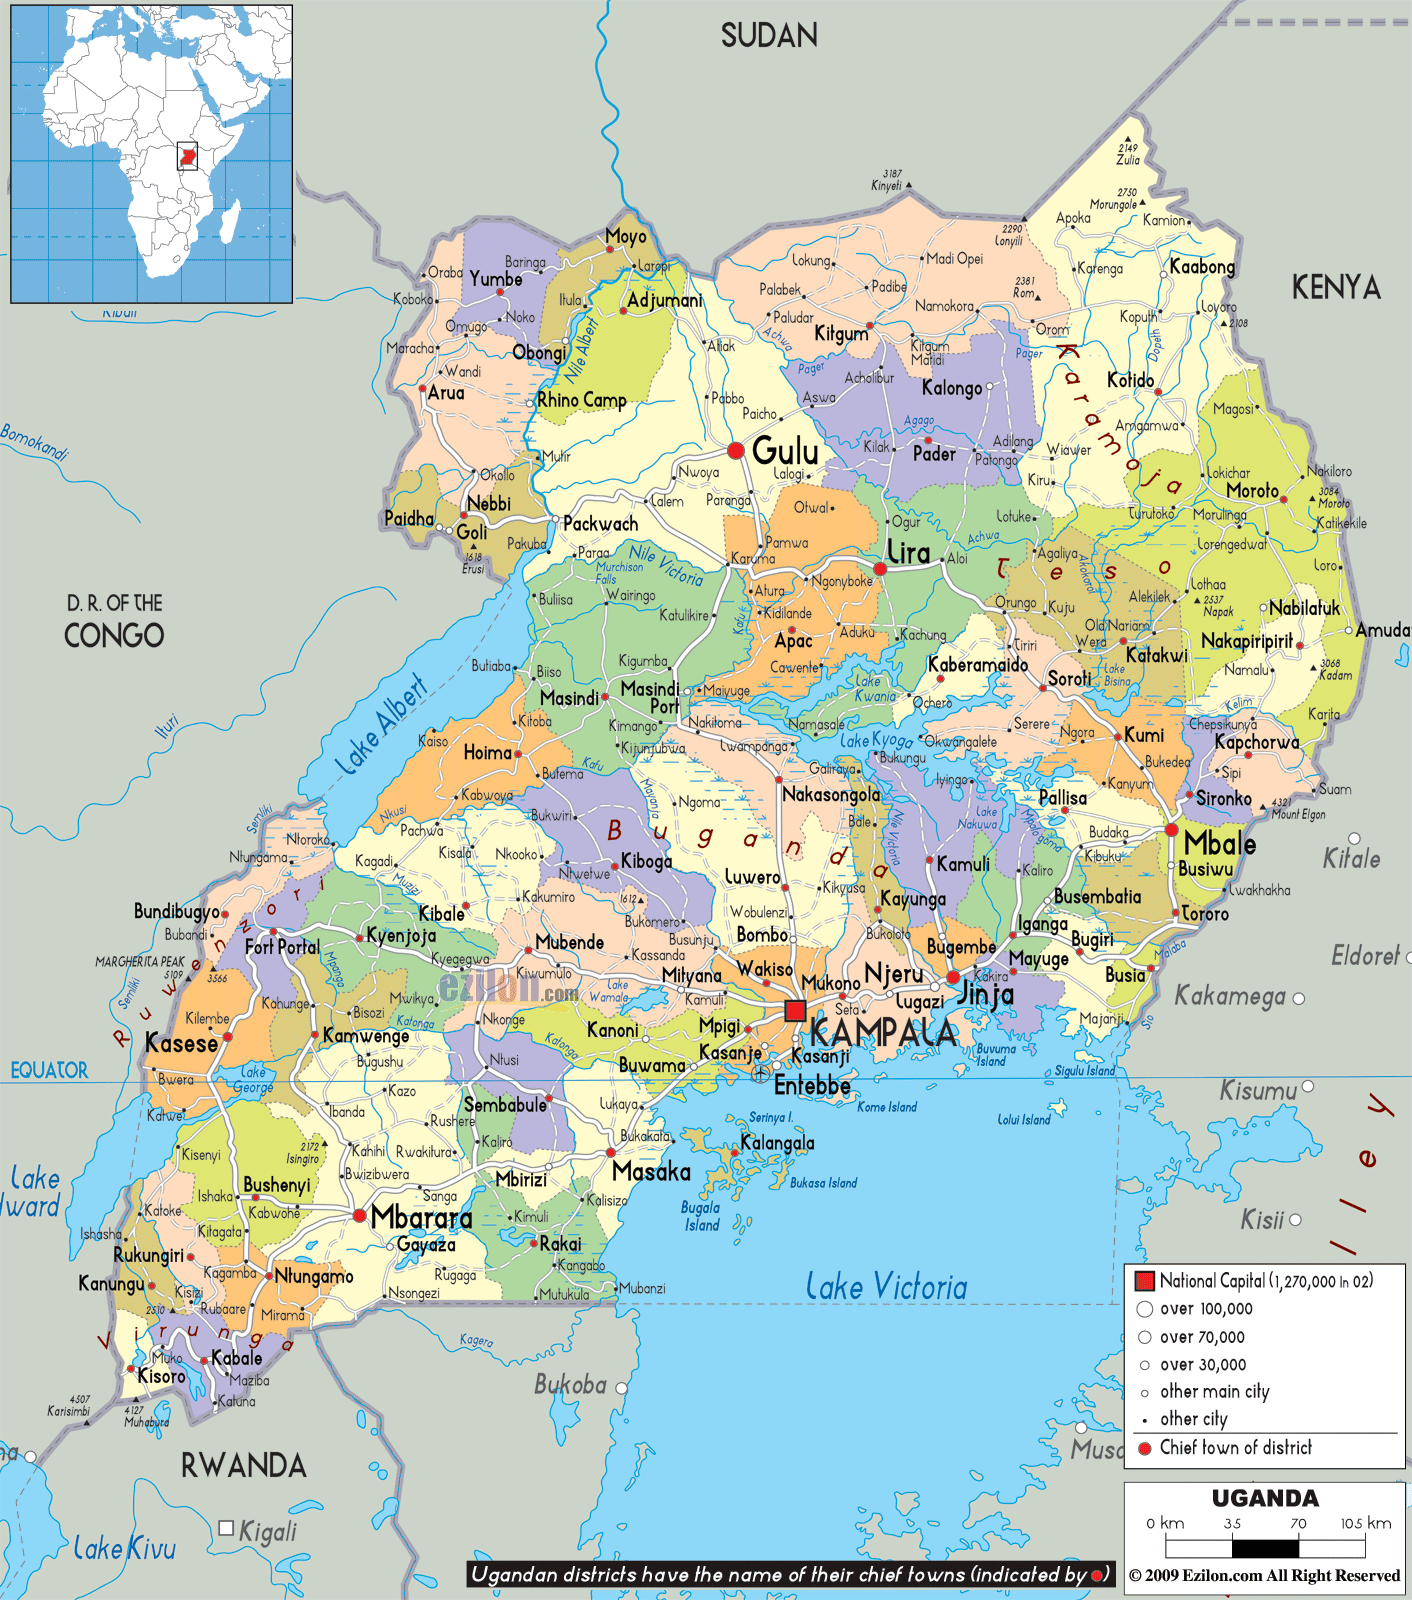 Uganda - Geografiske Kort over Uganda